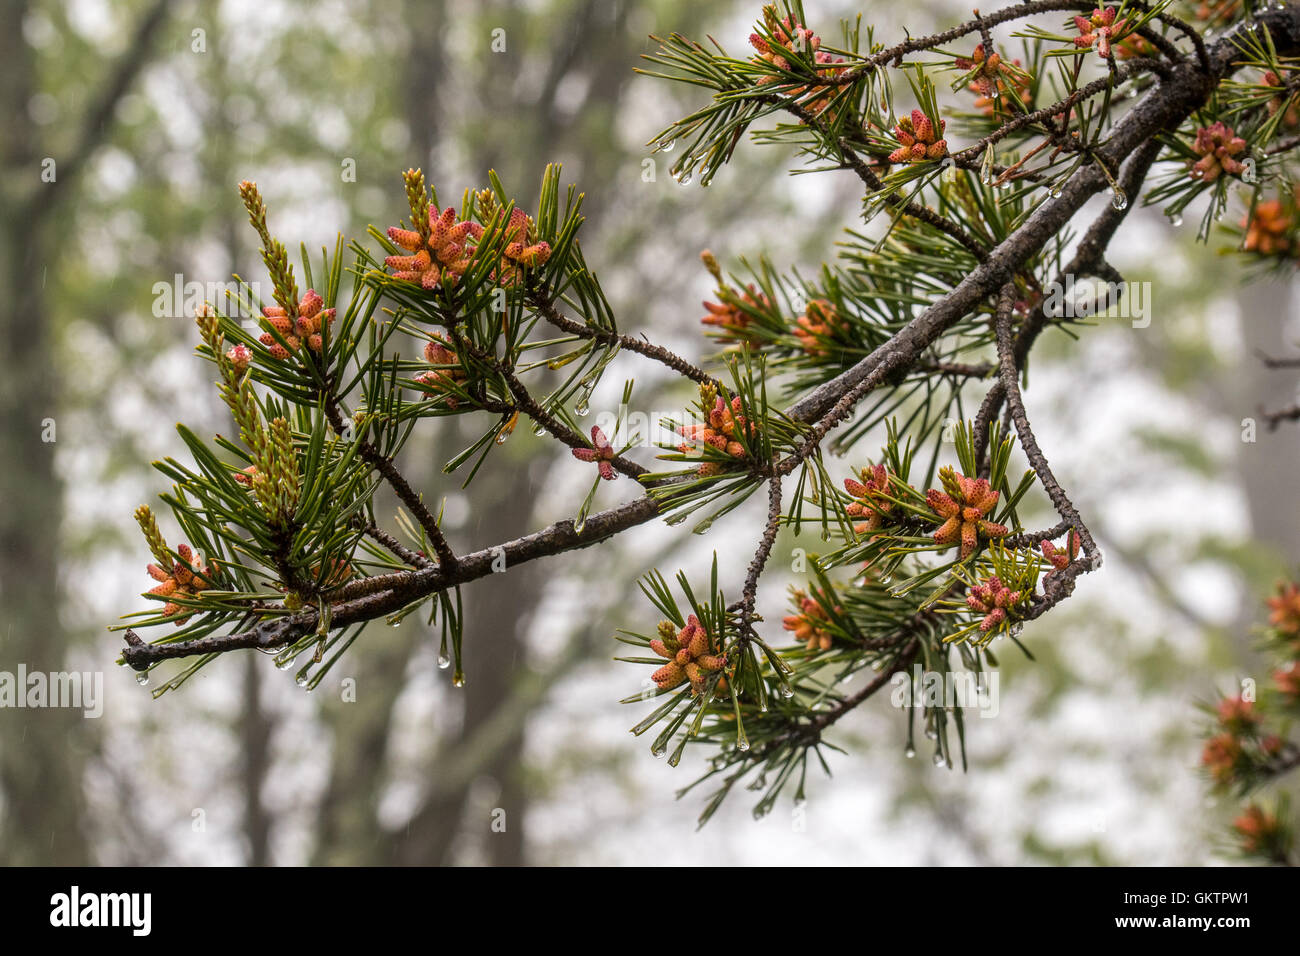 Tiny pine cones on a pine tree Stock Photo - Alamy